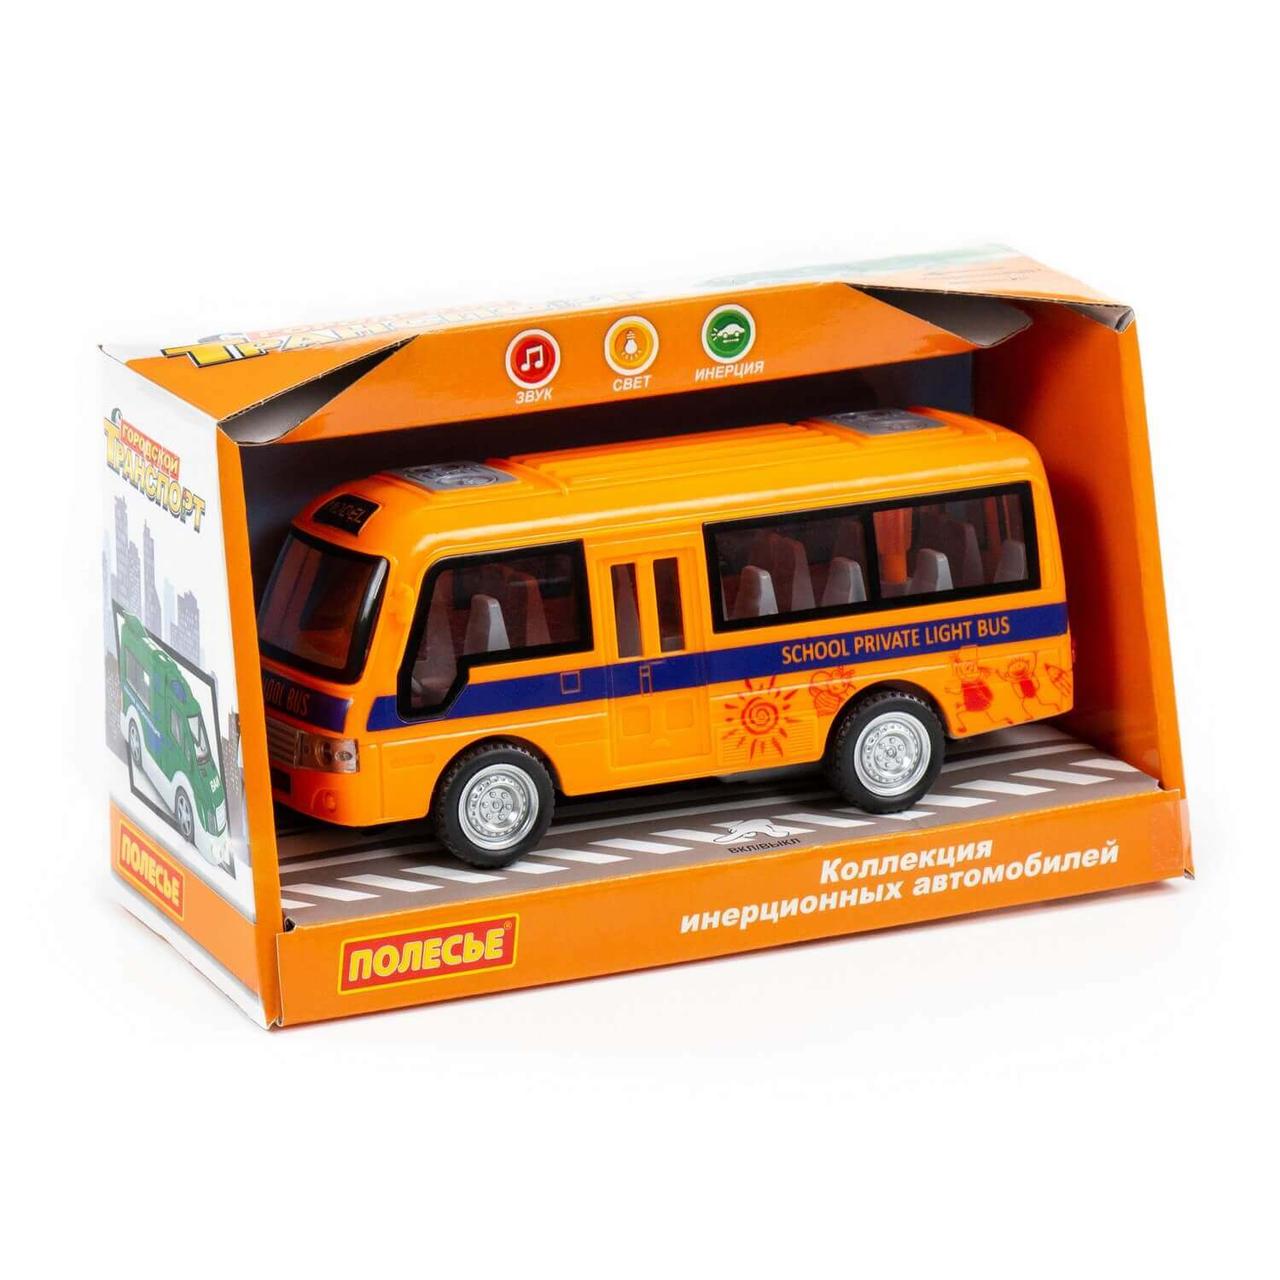 "Школьный автобус", автомобиль инерционный (со светом и звуком) (в коробке)